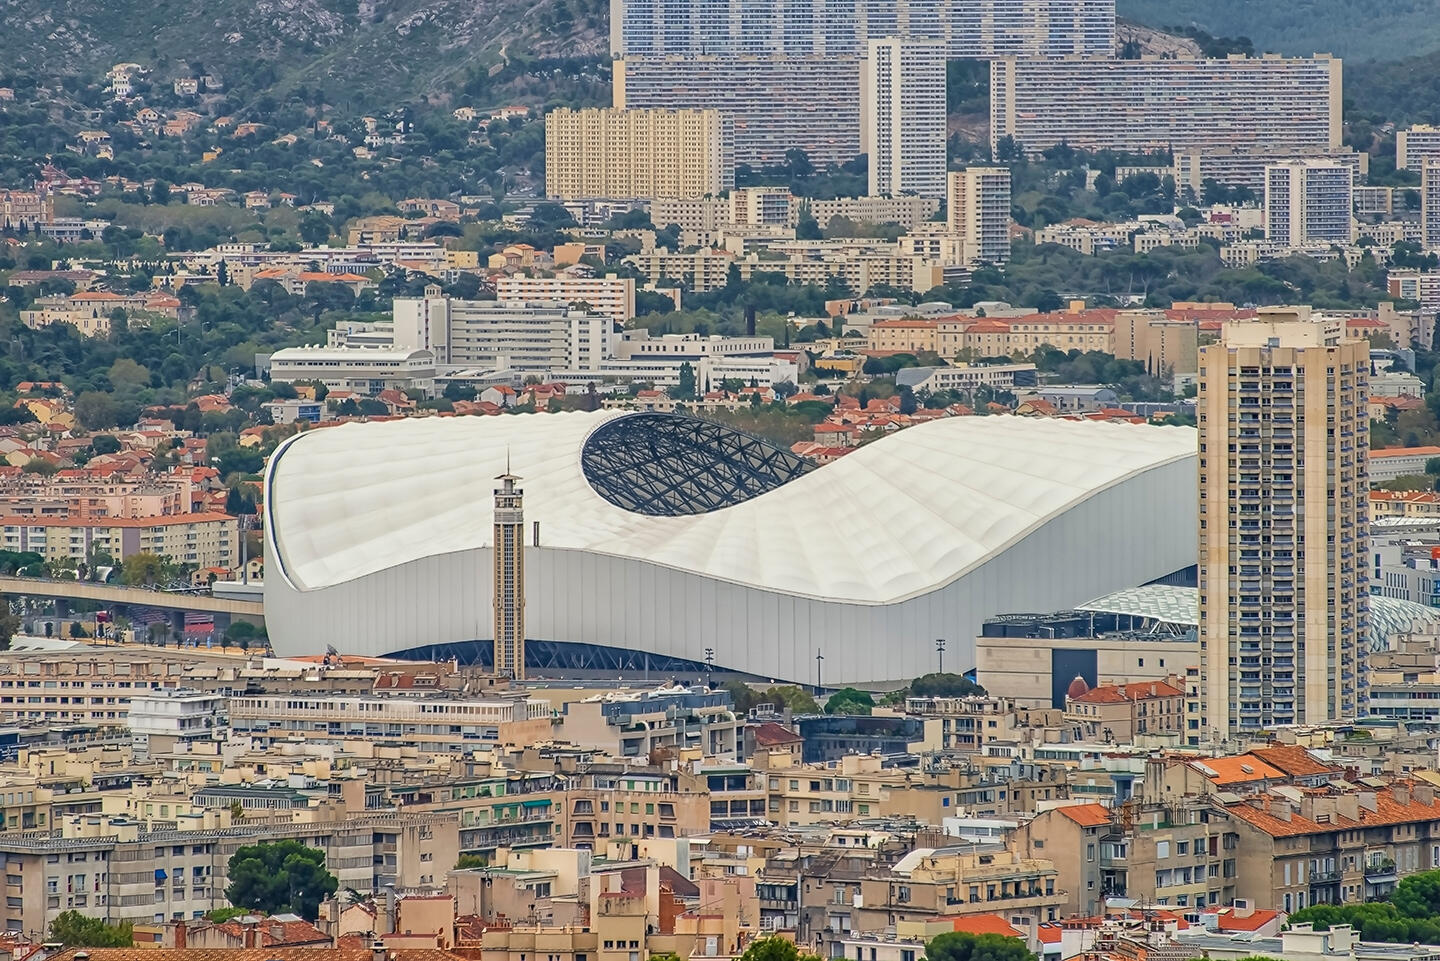 Luftaufnahme des Stade Vélodrome in Marseille mit seiner ikonischen Struktur in Form einer weißen Welle, umgeben von der dichten städtischen Architektur der Stadt und den Hügeln im Hintergrund, die ein immersives Erlebnis für Besucher suggerieren, die in örtlichen Aparthotels übernachten.